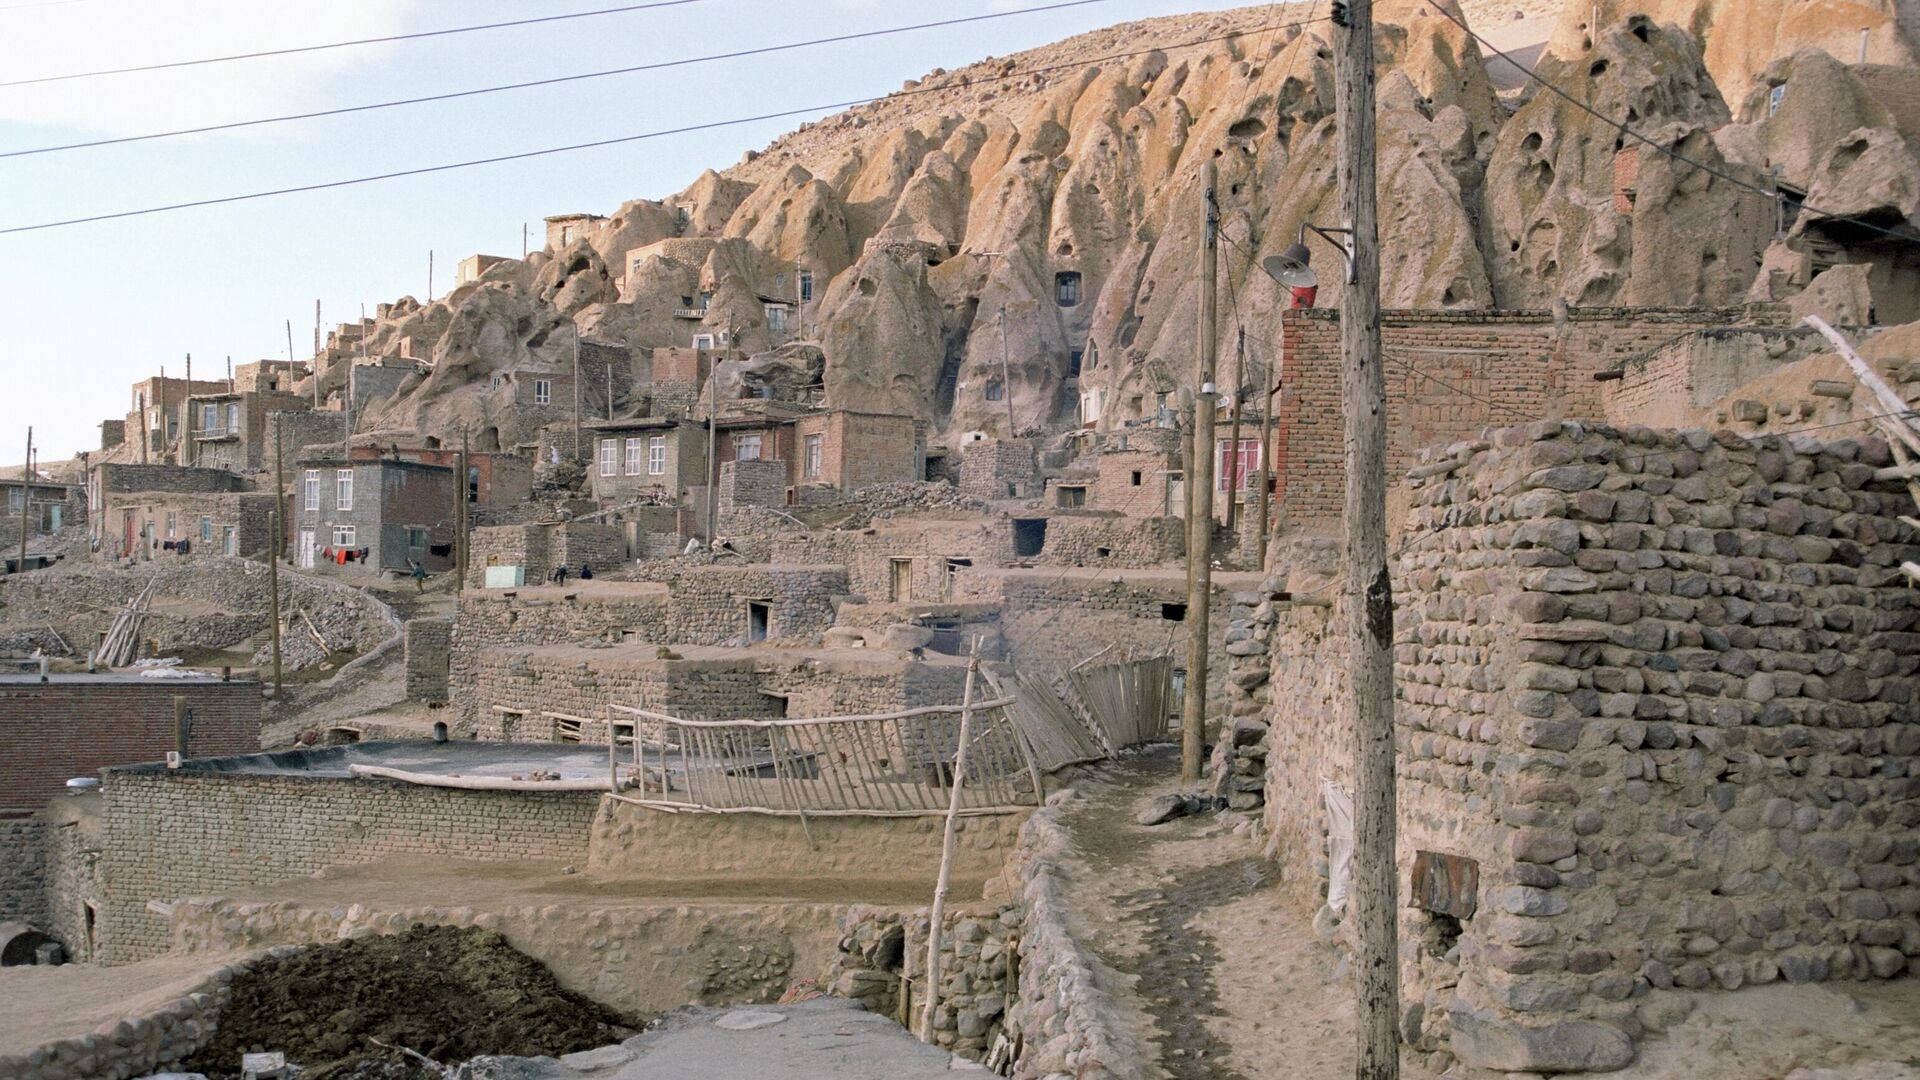 Кандован - деревня с жилищами, вырубленными в скалах, около города Тебриз, недалеко от озера Урмия в Иране. - Sputnik Армения, 1920, 11.11.2021